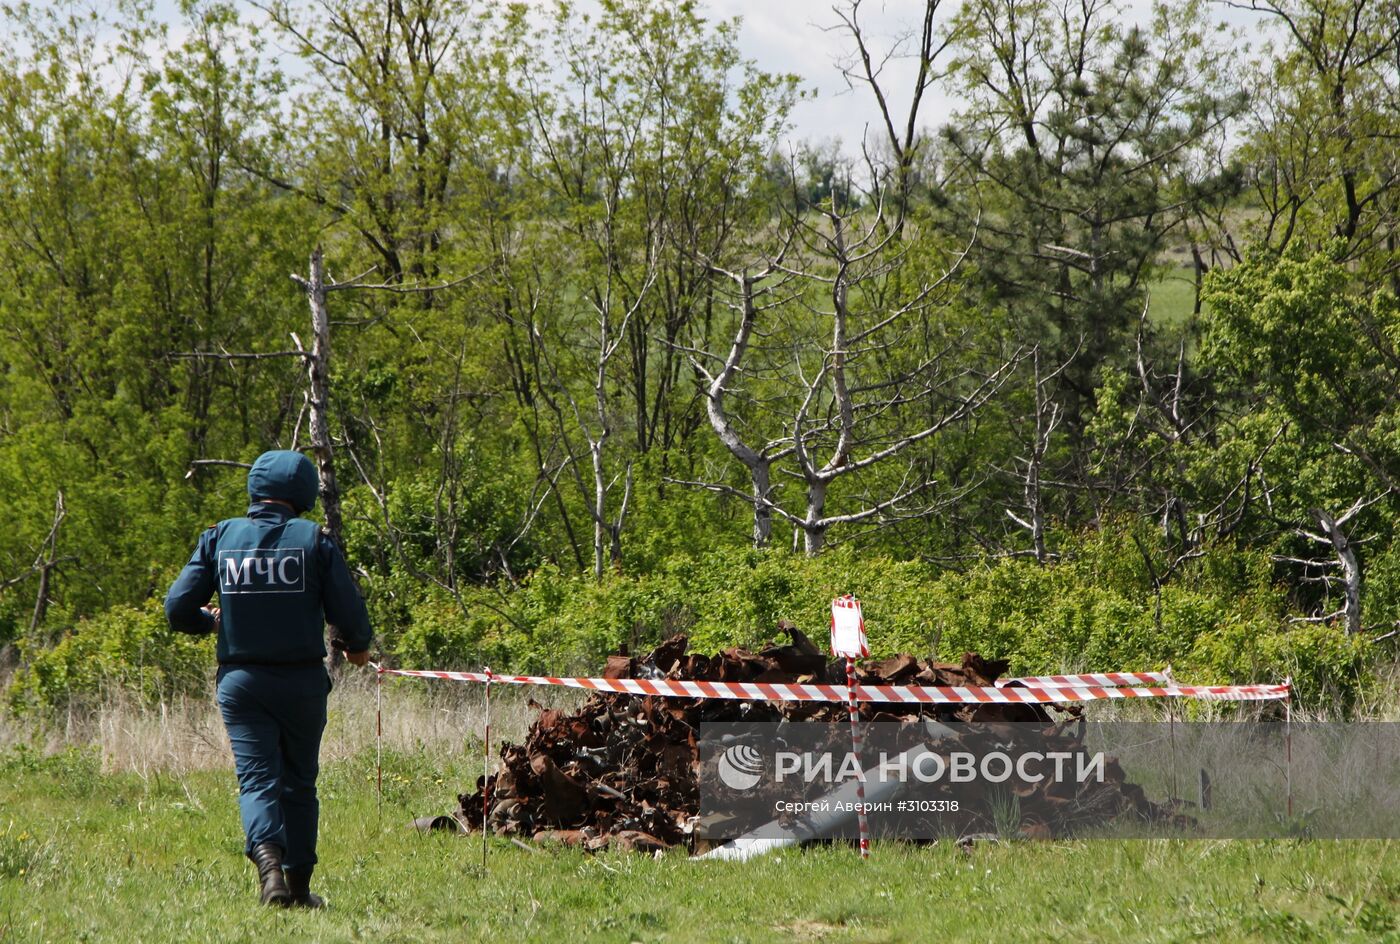 МЧС ДНР провело разминирование территории с. Солнцево в Донецкой области